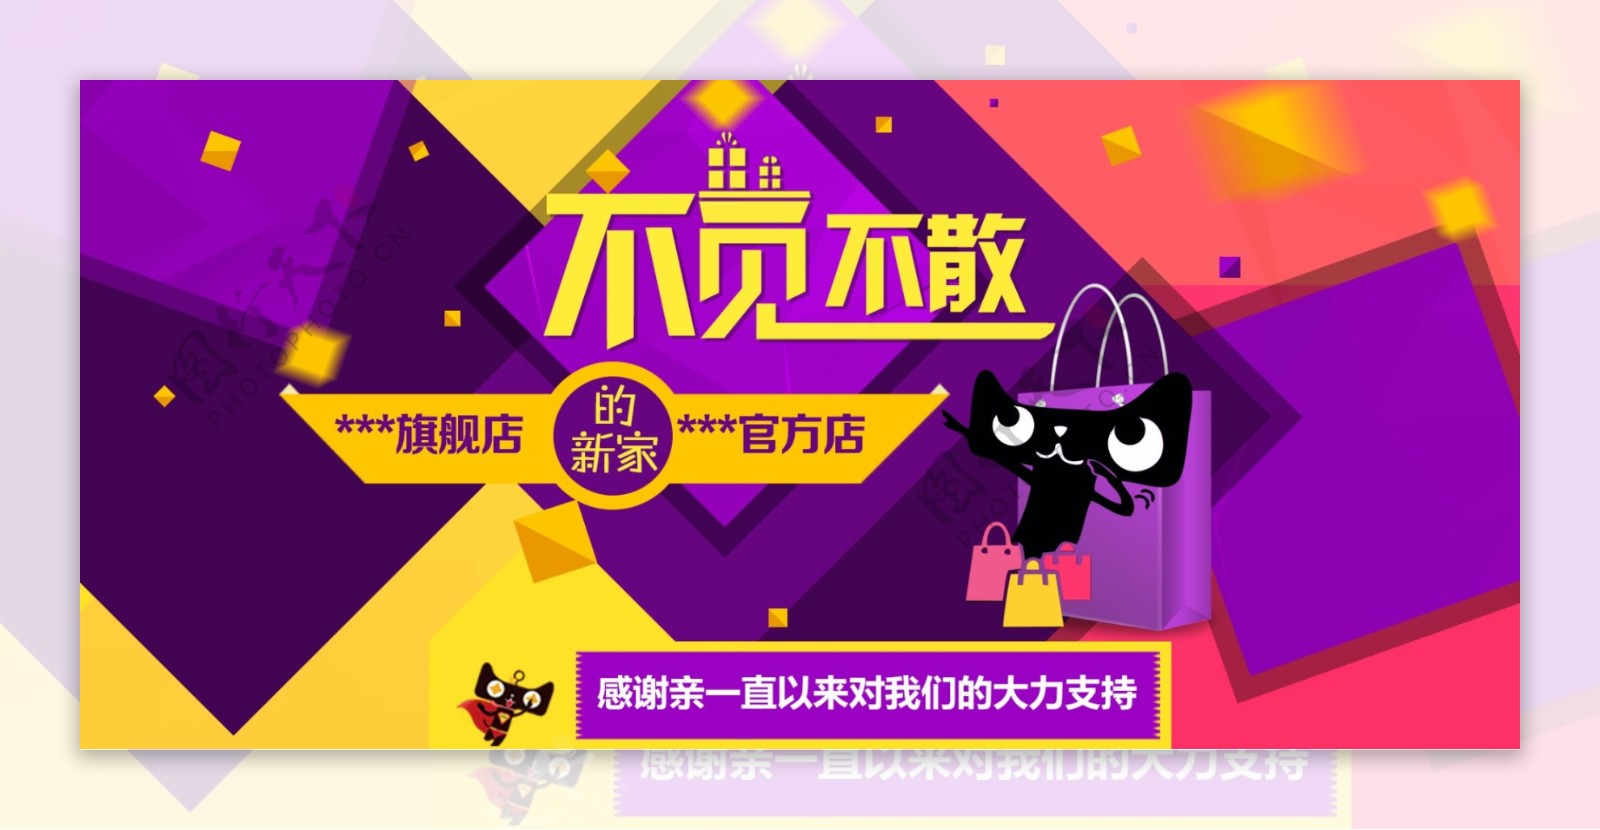 天猫淘宝不见不散全屏背景清新节日促销海报